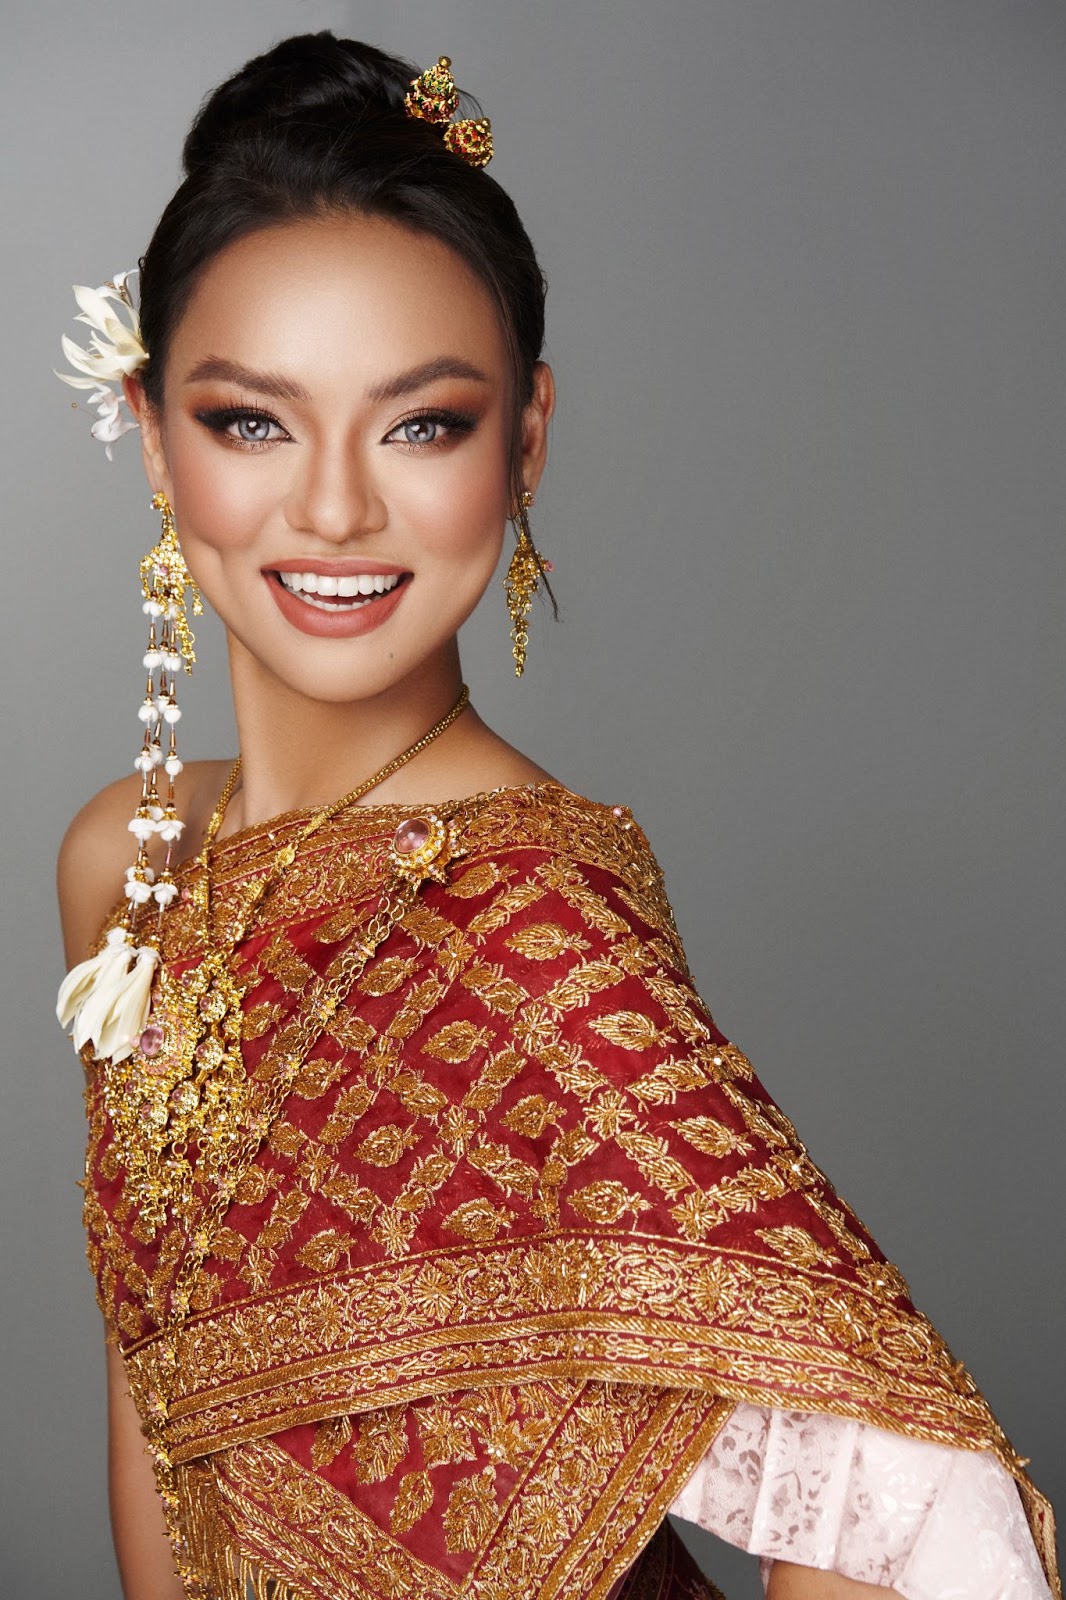 Mai Ngô đằm thắm đậm chất Thái Lan, sẵn sàng “chiến” tại Hoa hậu chuyển giới Việt Nam - ảnh 5